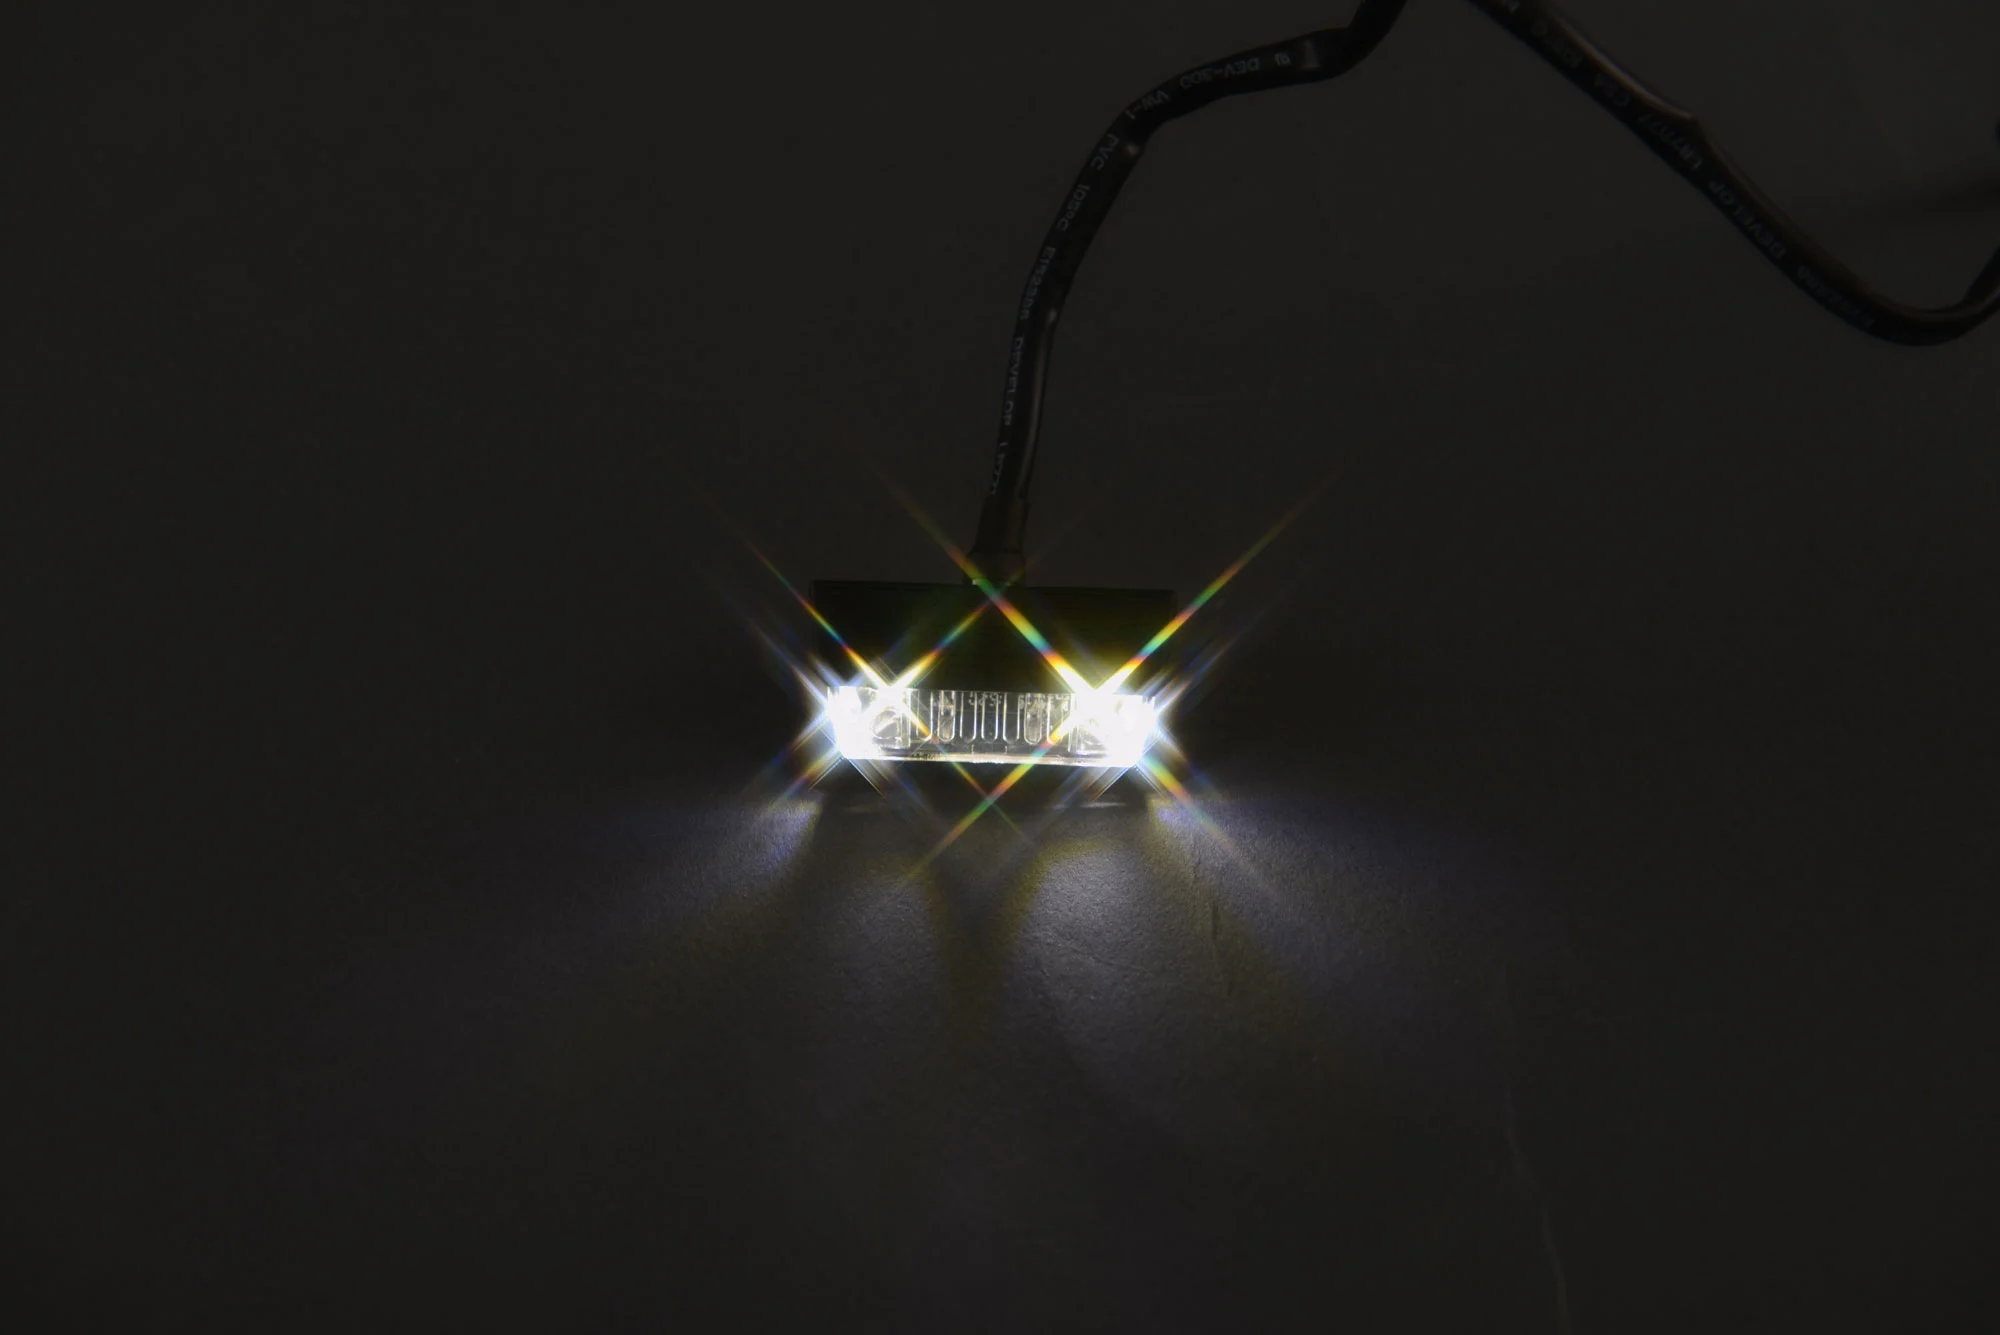 Luz de matrícula LED – Reequipamiento, ventajas y datos, posibles fallos